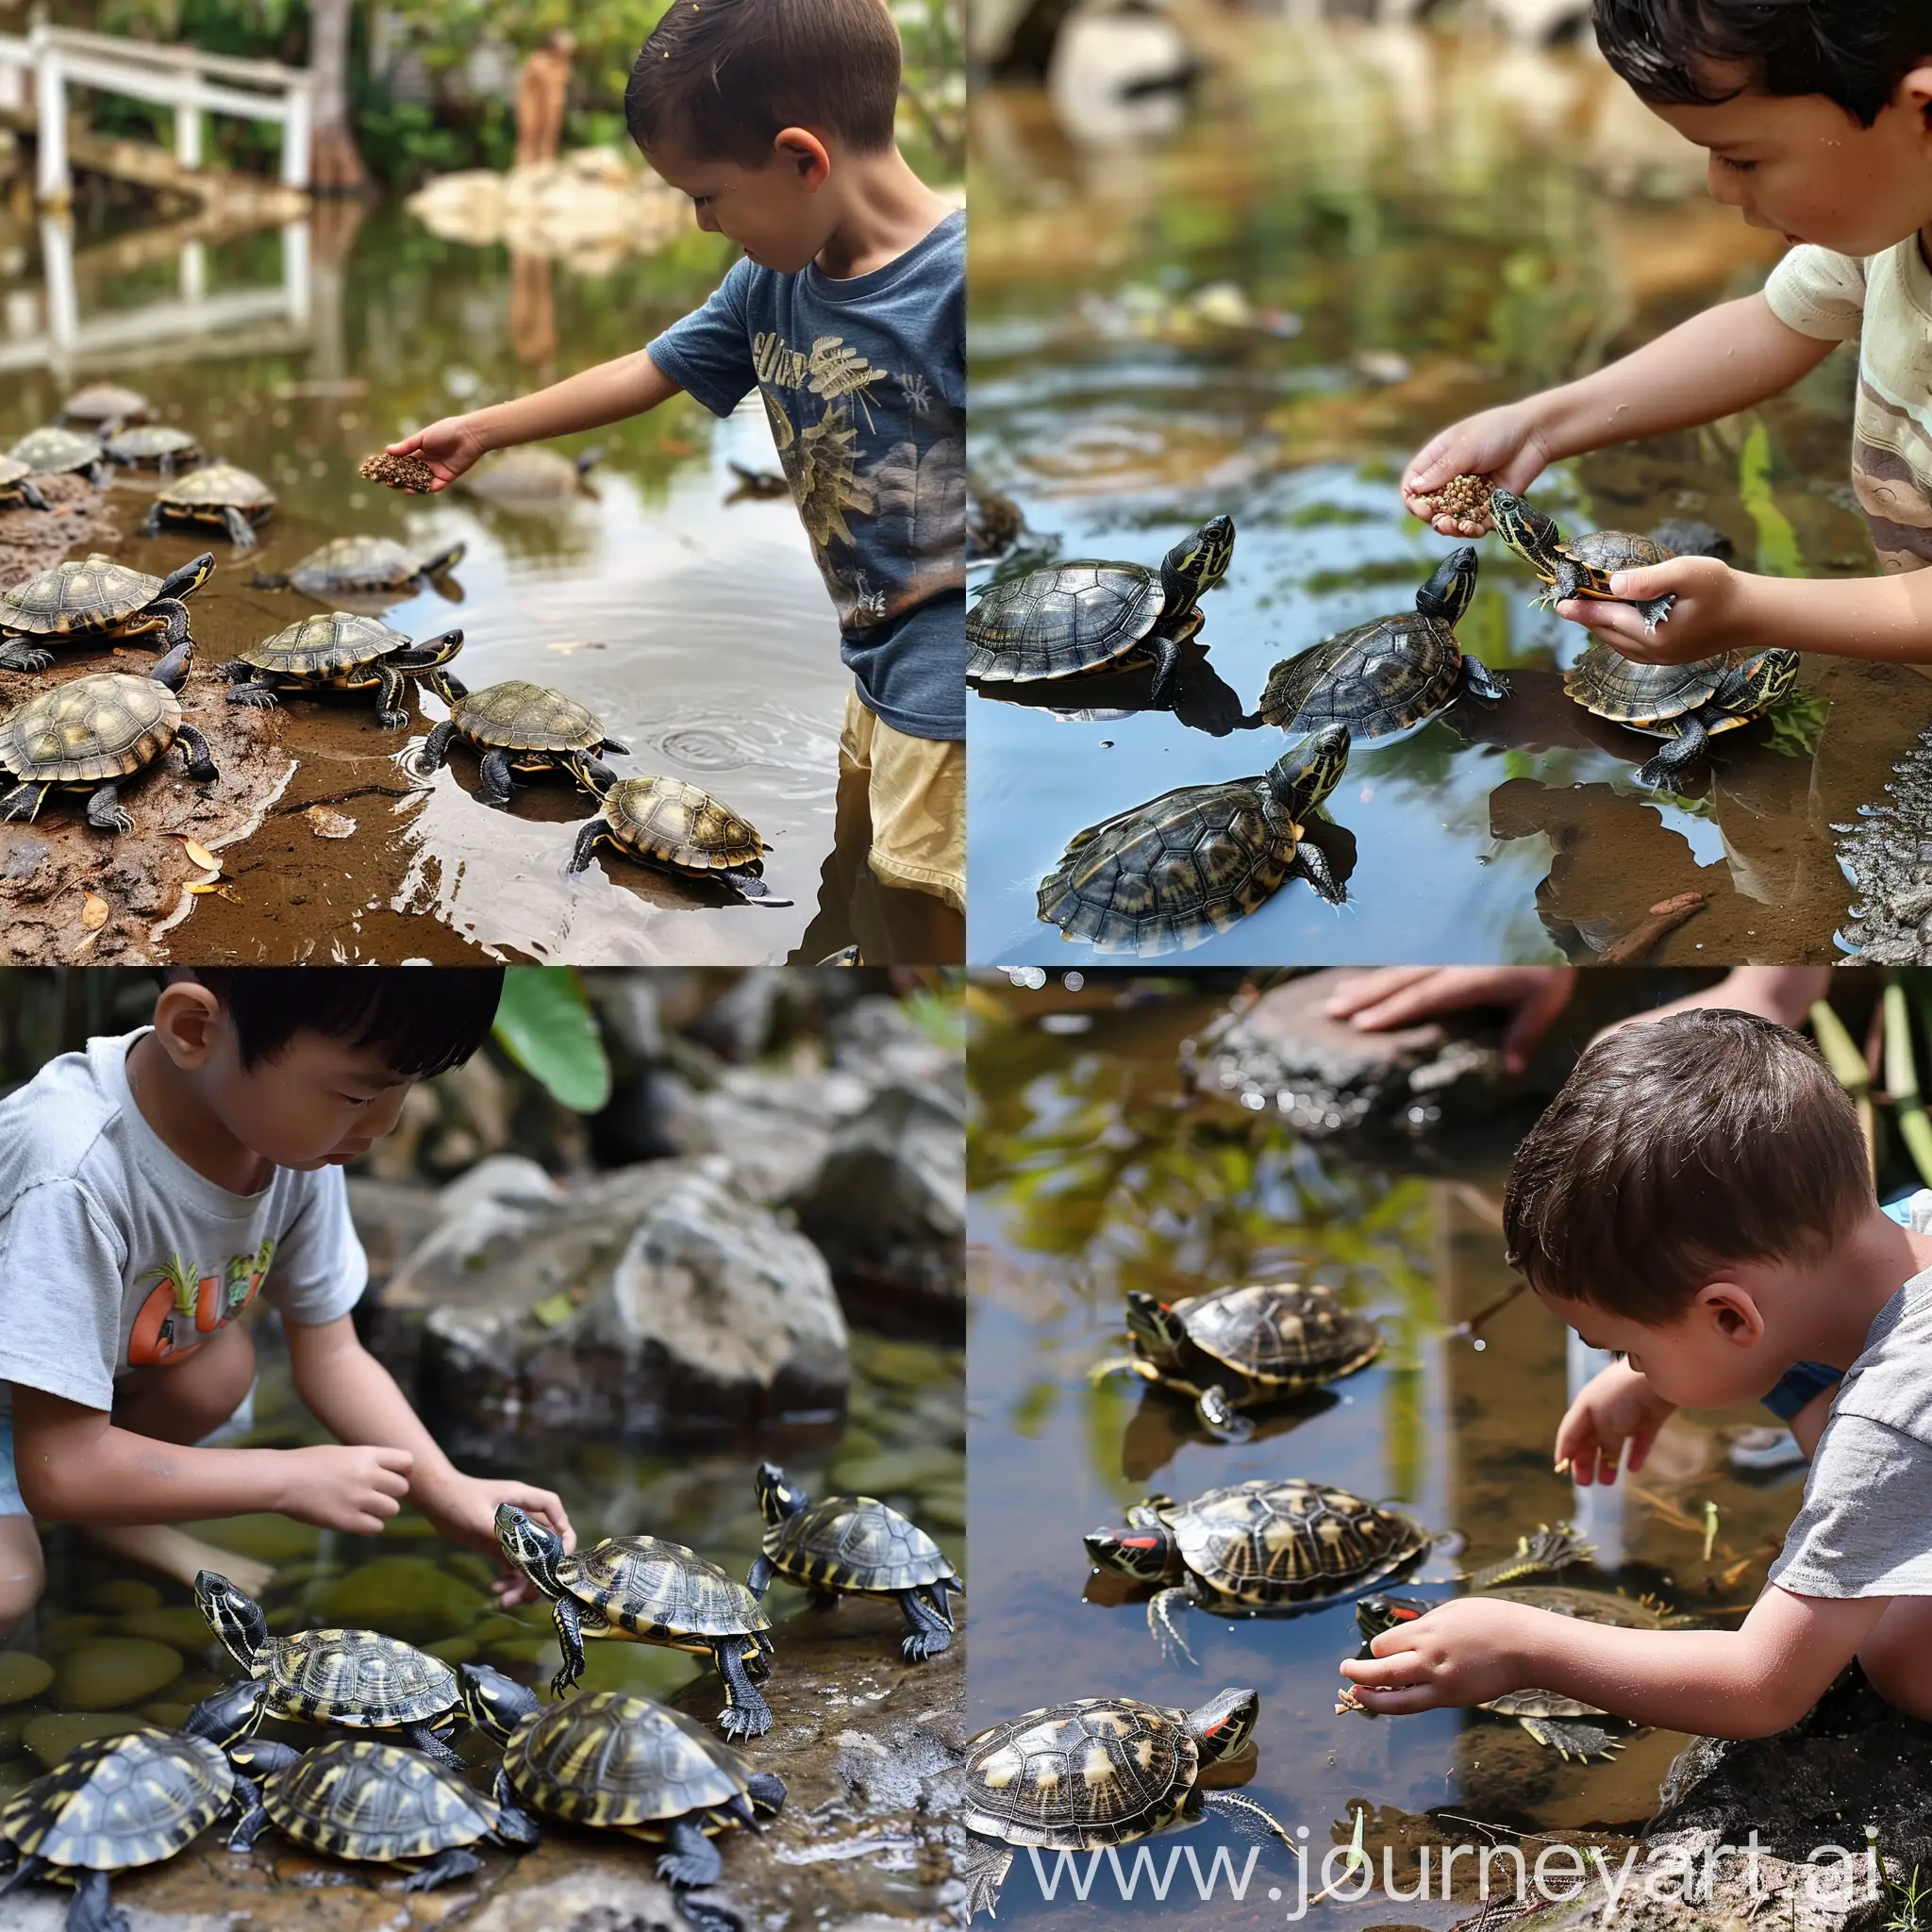 Boy-Feeding-Mud-Turtles-in-Pond